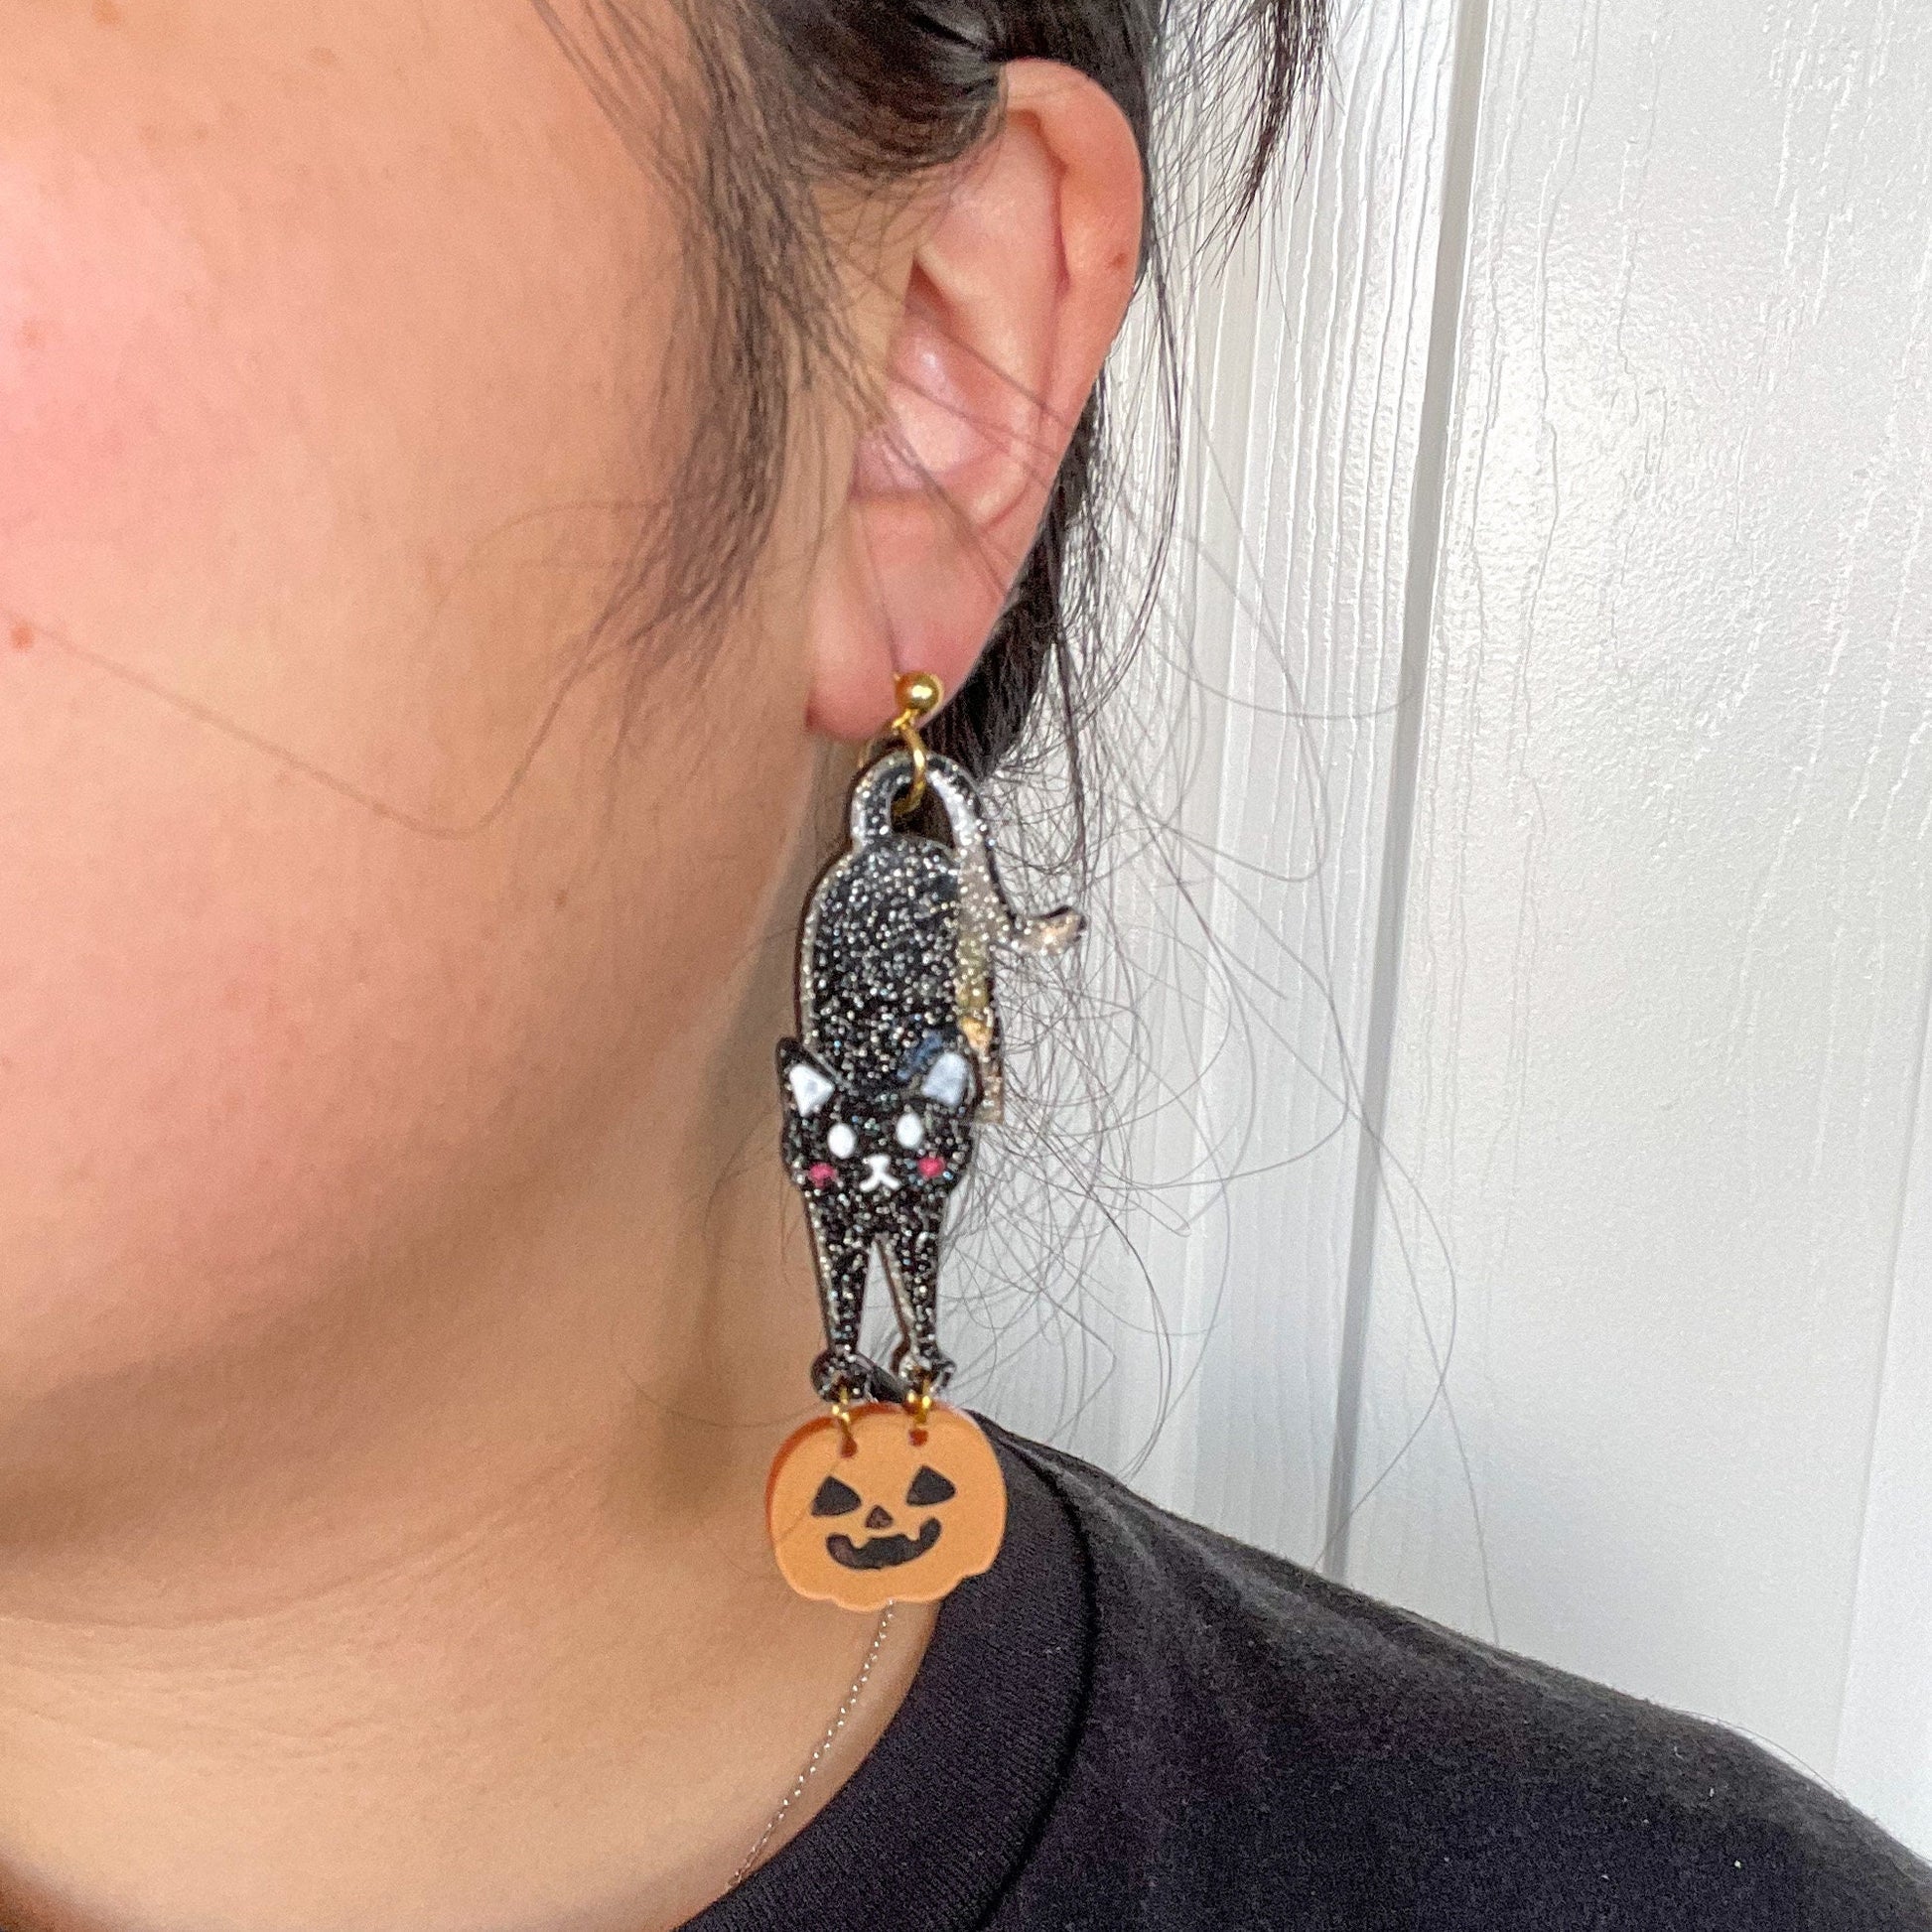 Pumpkin Cat//Black Cat Earring//Halloween earrings//cat jewelry//spooky accessories//Halloween fashion//cute cat design//festive jewelry.